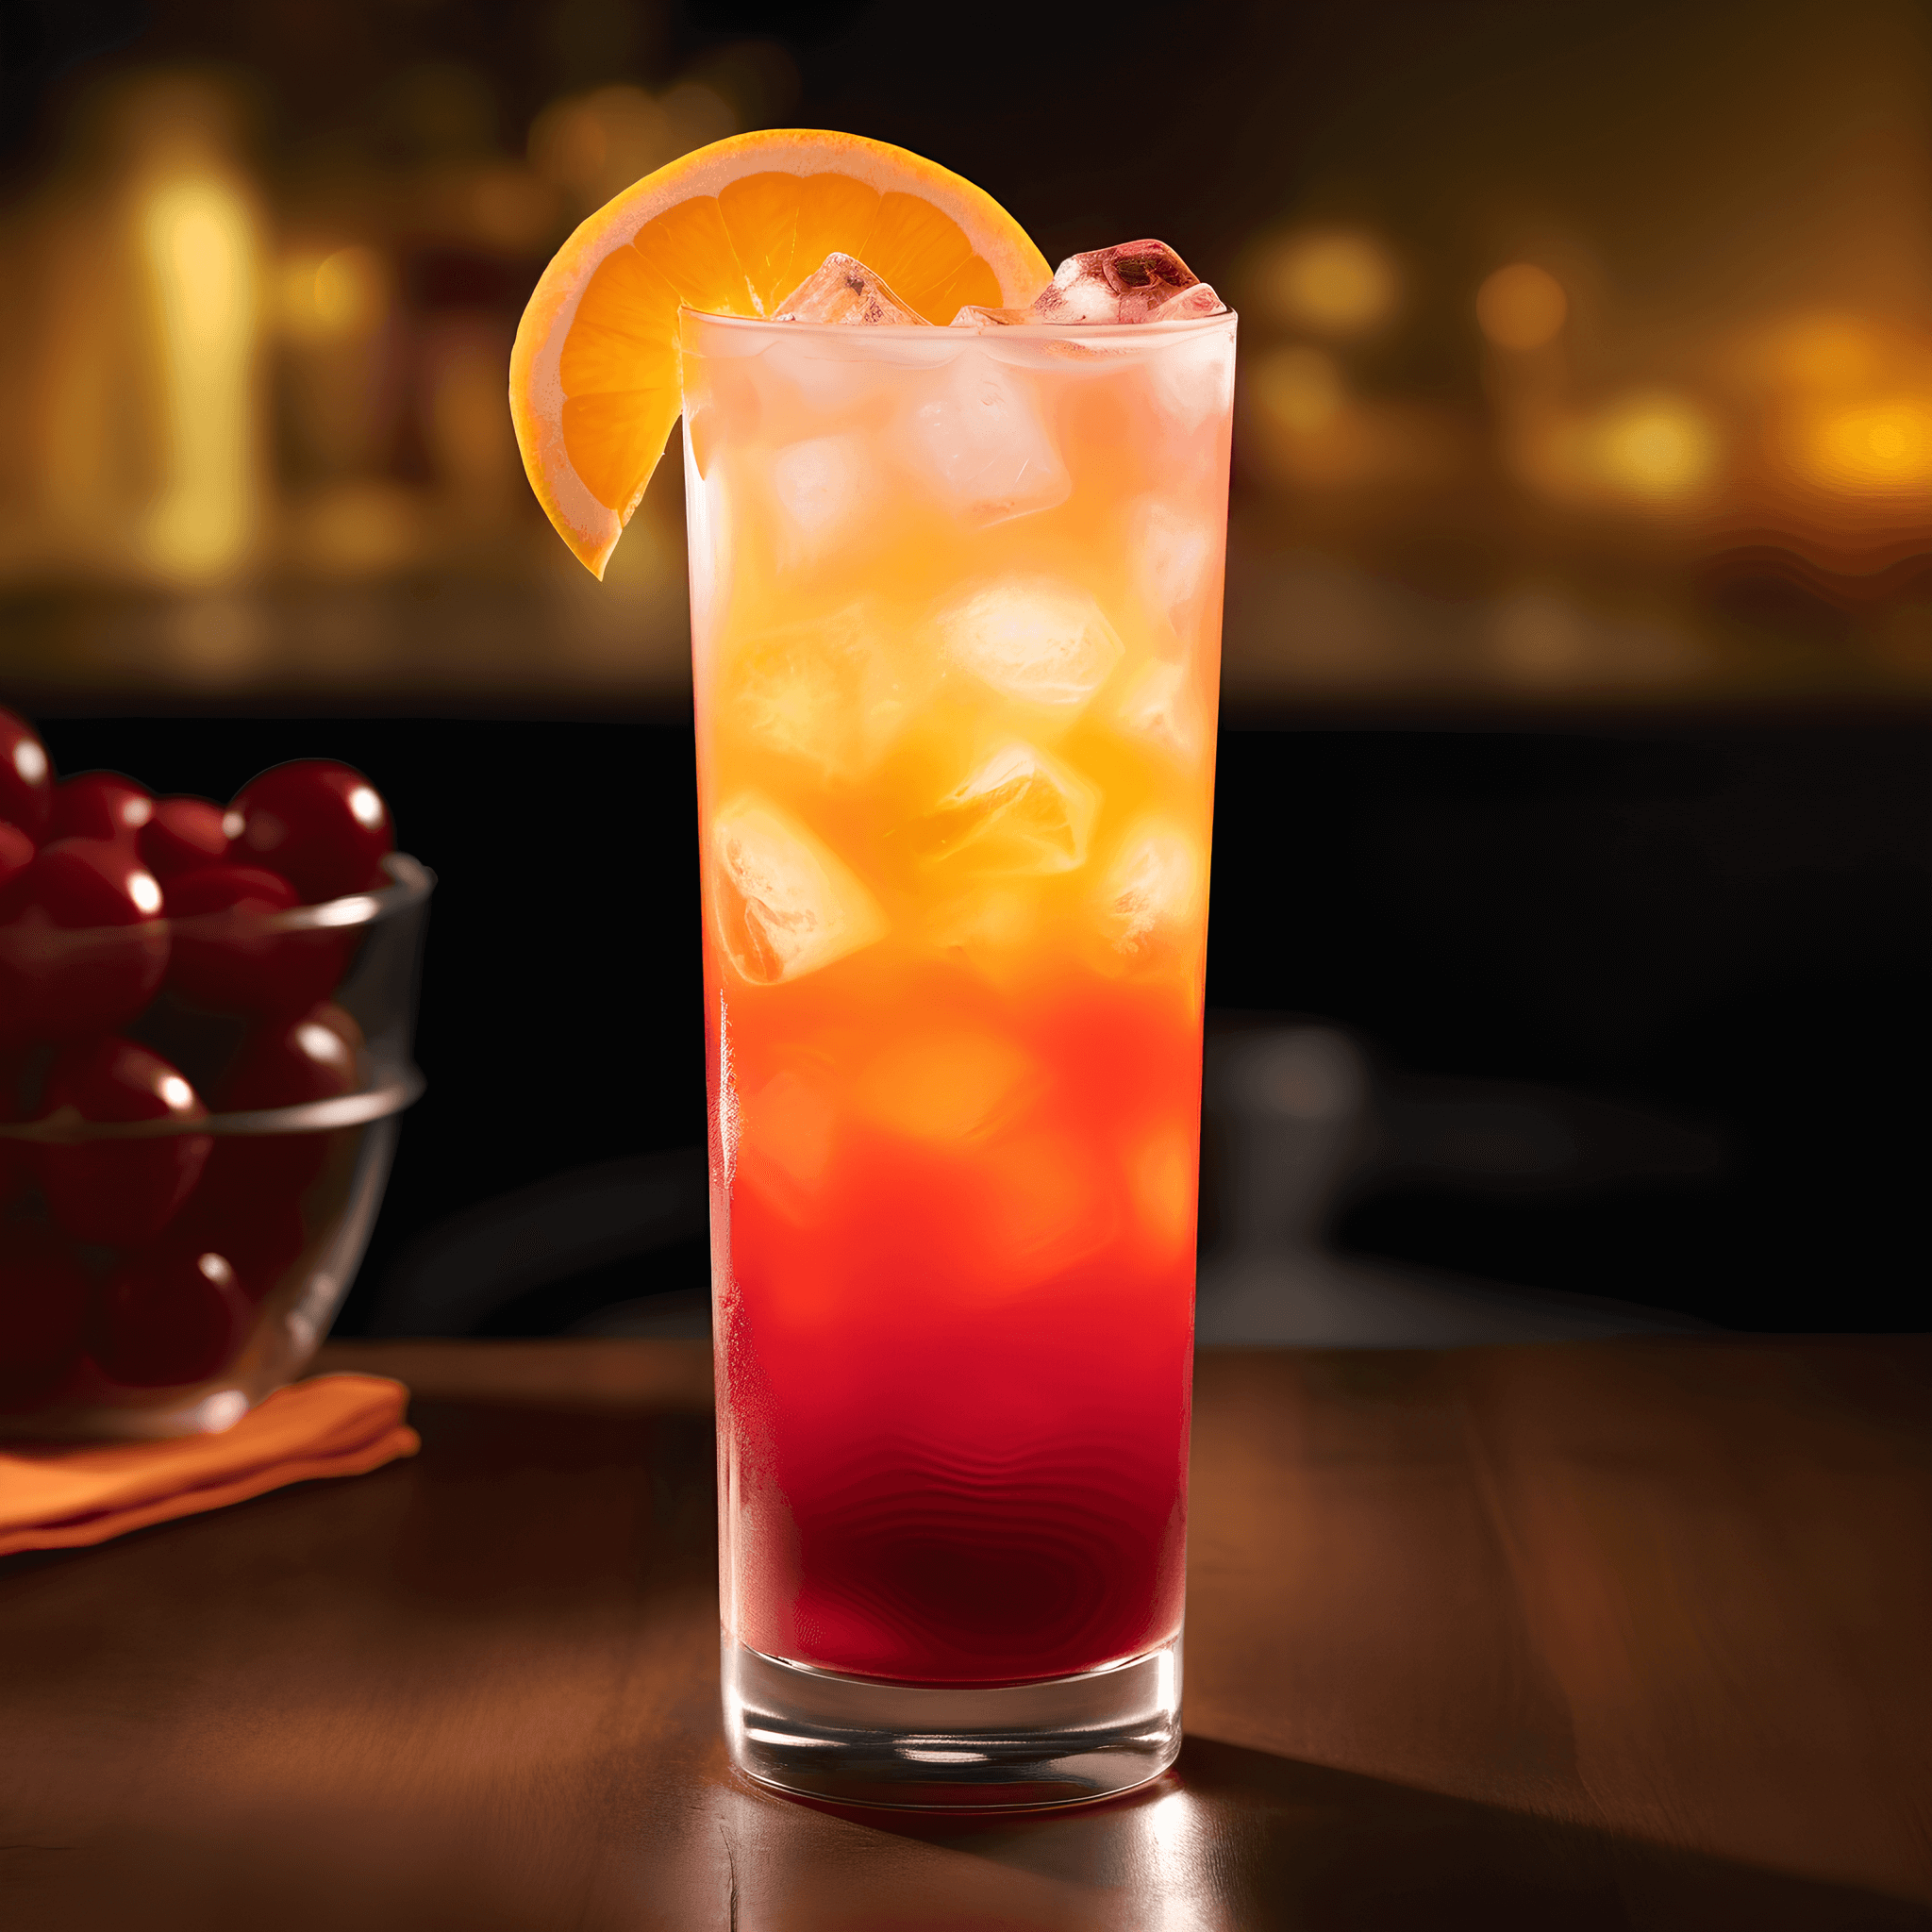 El Tequila Sunrise tiene un sabor dulce y afrutado, con un toque de acidez del jugo de naranja y la granadina. El tequila agrega una calidez y profundidad sutiles al sabor, lo que lo convierte en una bebida equilibrada y satisfactoria.